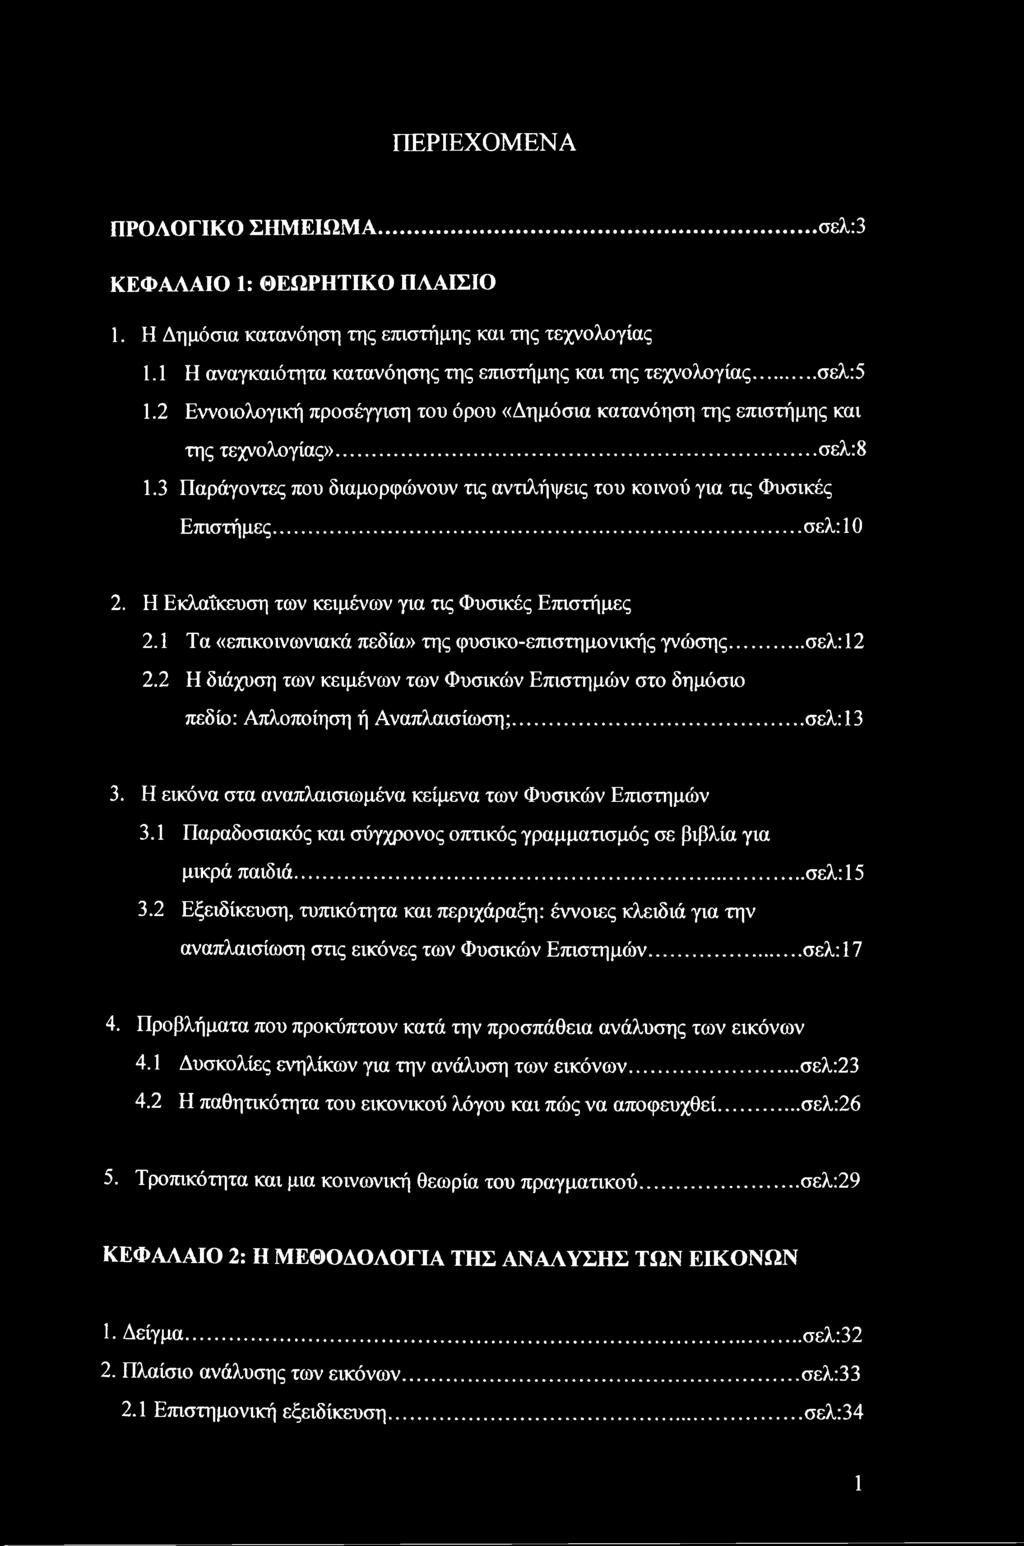 Η Εκλαΐκευση των κειμένων για τις Φυσικές Επιστήμες 2.1 Τα «επικοινωνιακά πεδία» της φυσικο-επιστημονικής γνώσης... σελ:12 2.